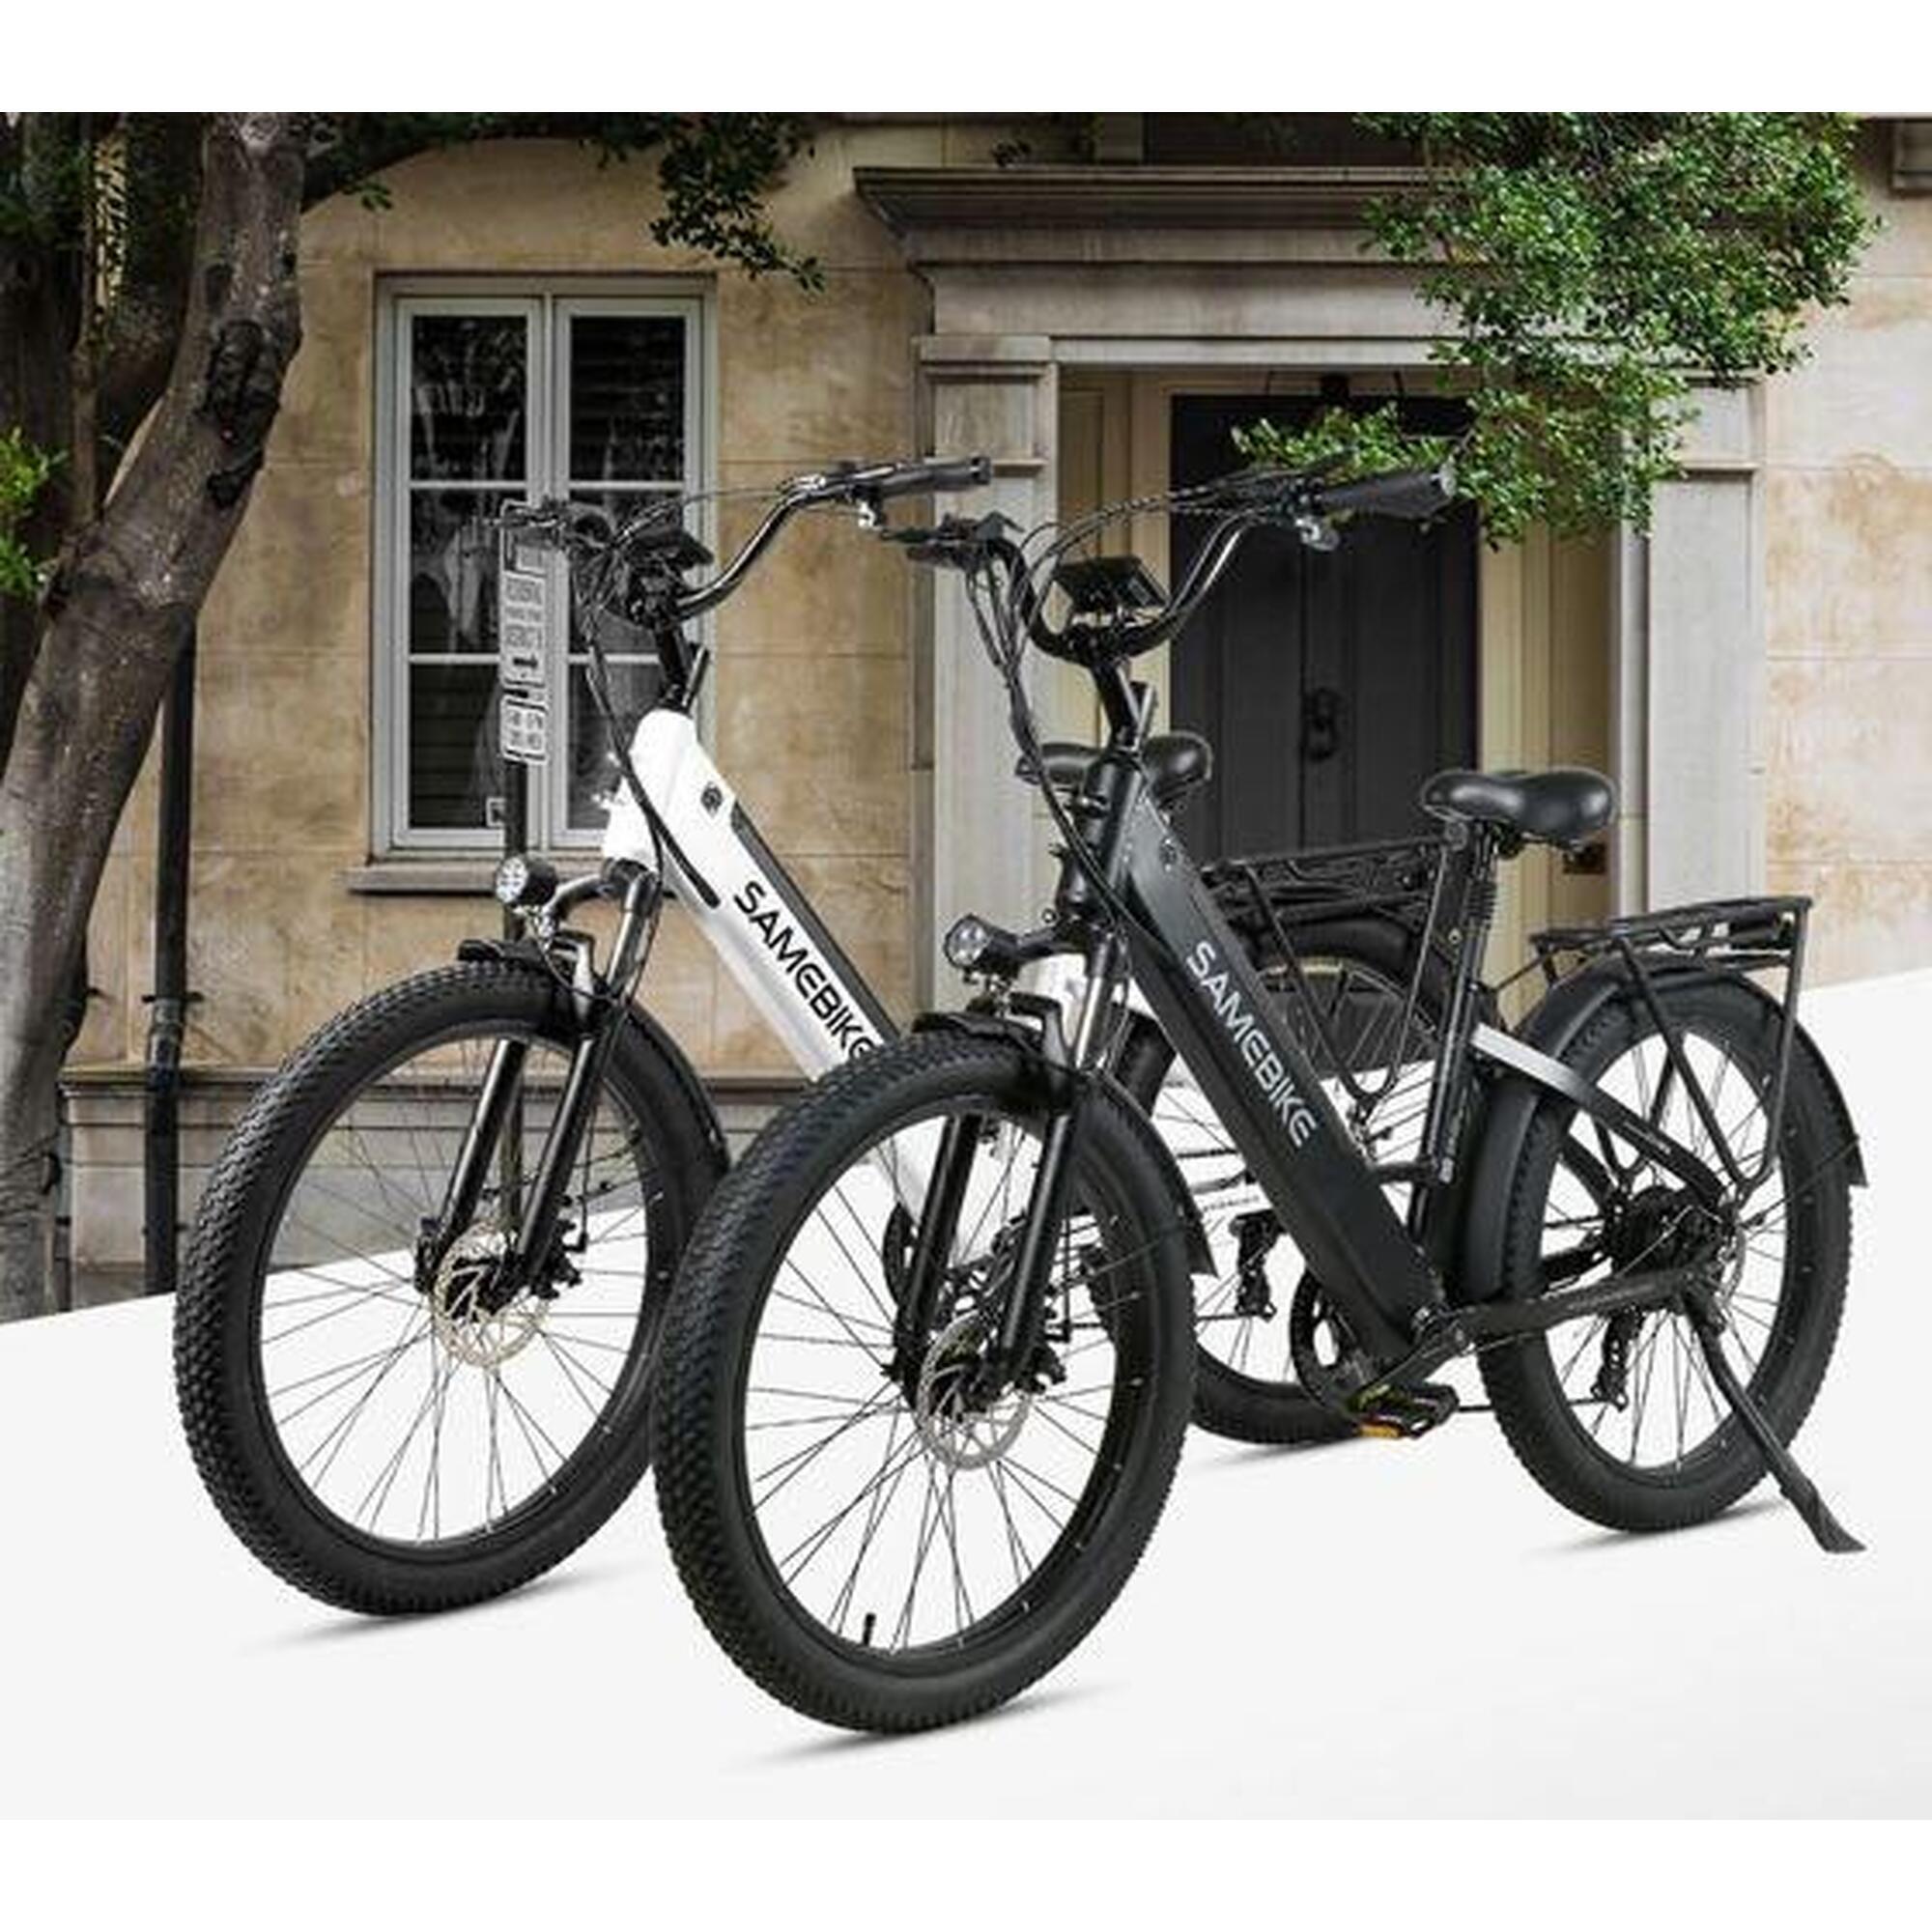 bicicleta eléctrica urbana RS-A01 48V-14Ah (672Wh) - semi fatbike 26"x3.0"